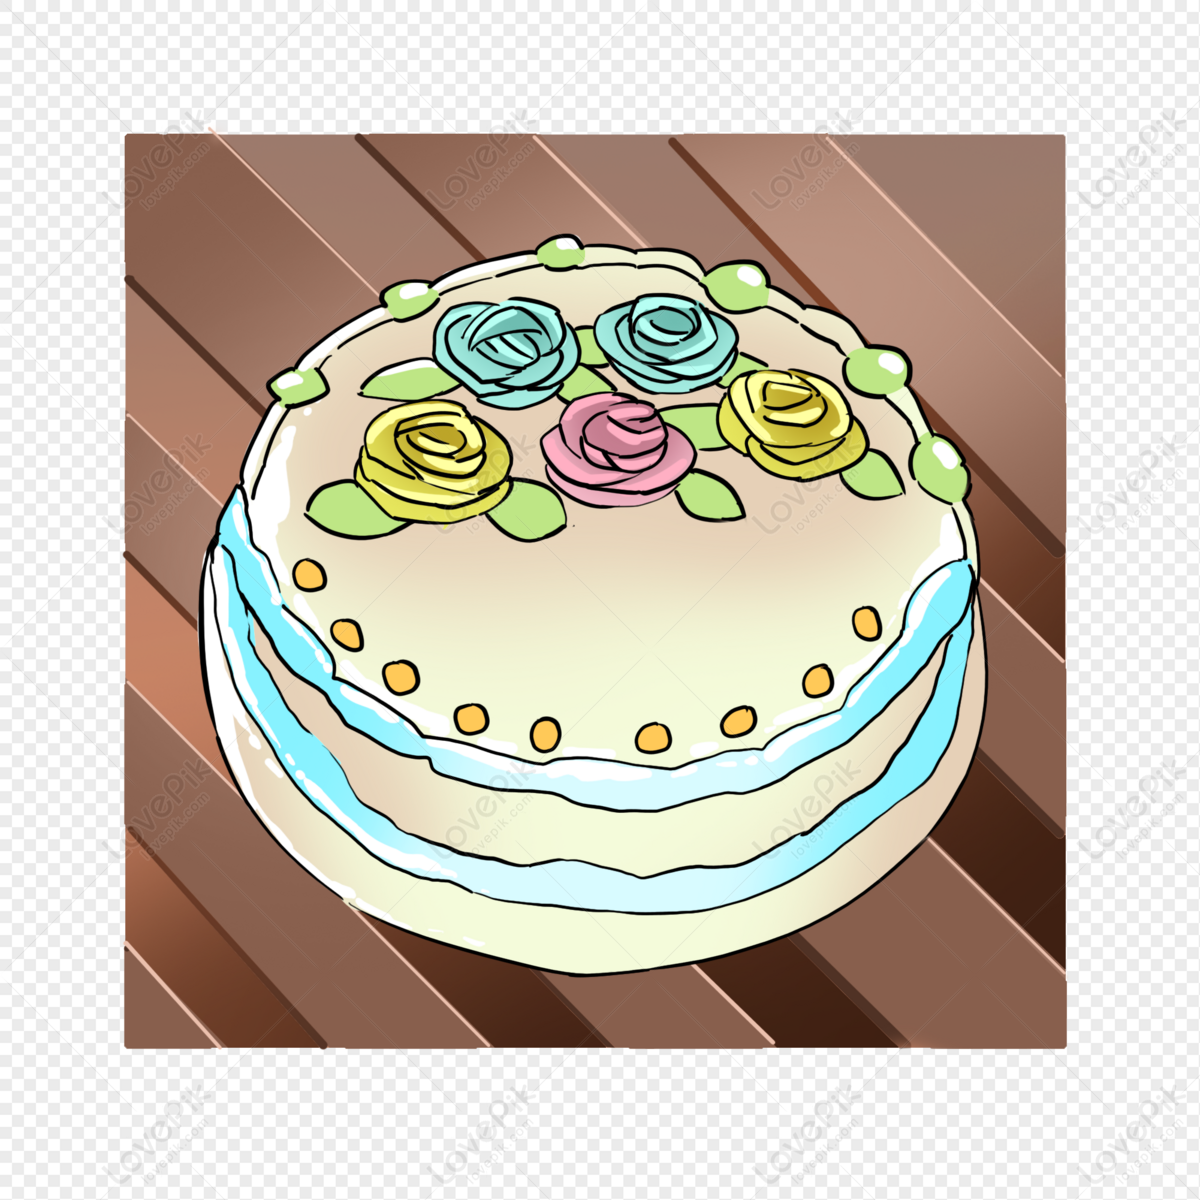 Basic Flower Cake - Rashmi's Bakery